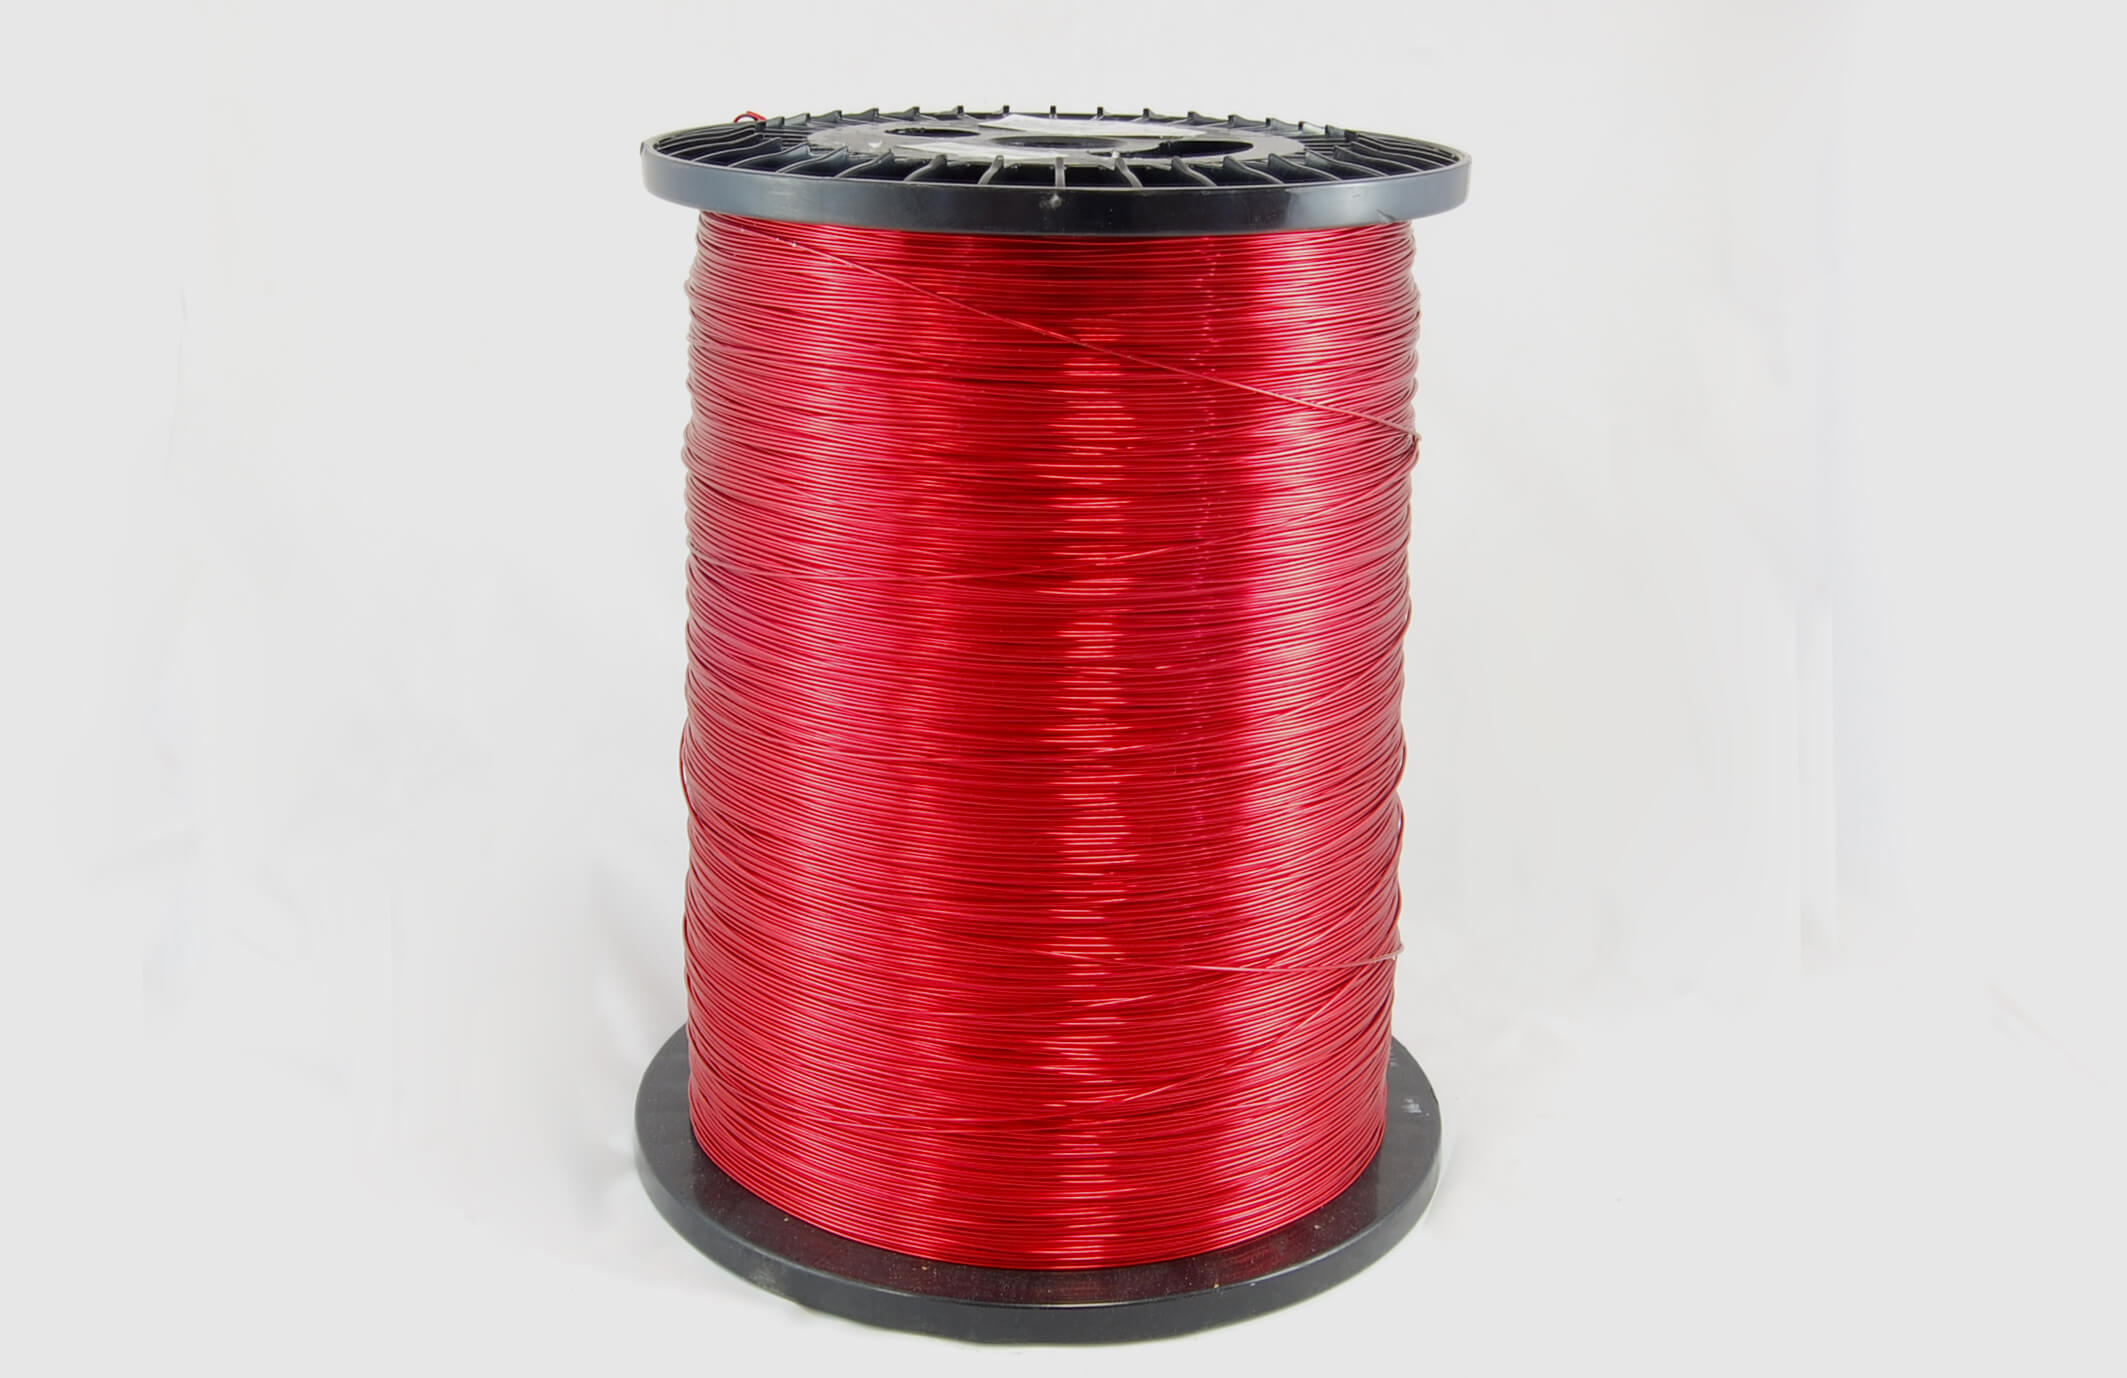 #22 Heavy Nysol  Round HNSR MW 80 Copper Magnet Wire 155°C, red, 85 LB box (average wght.)